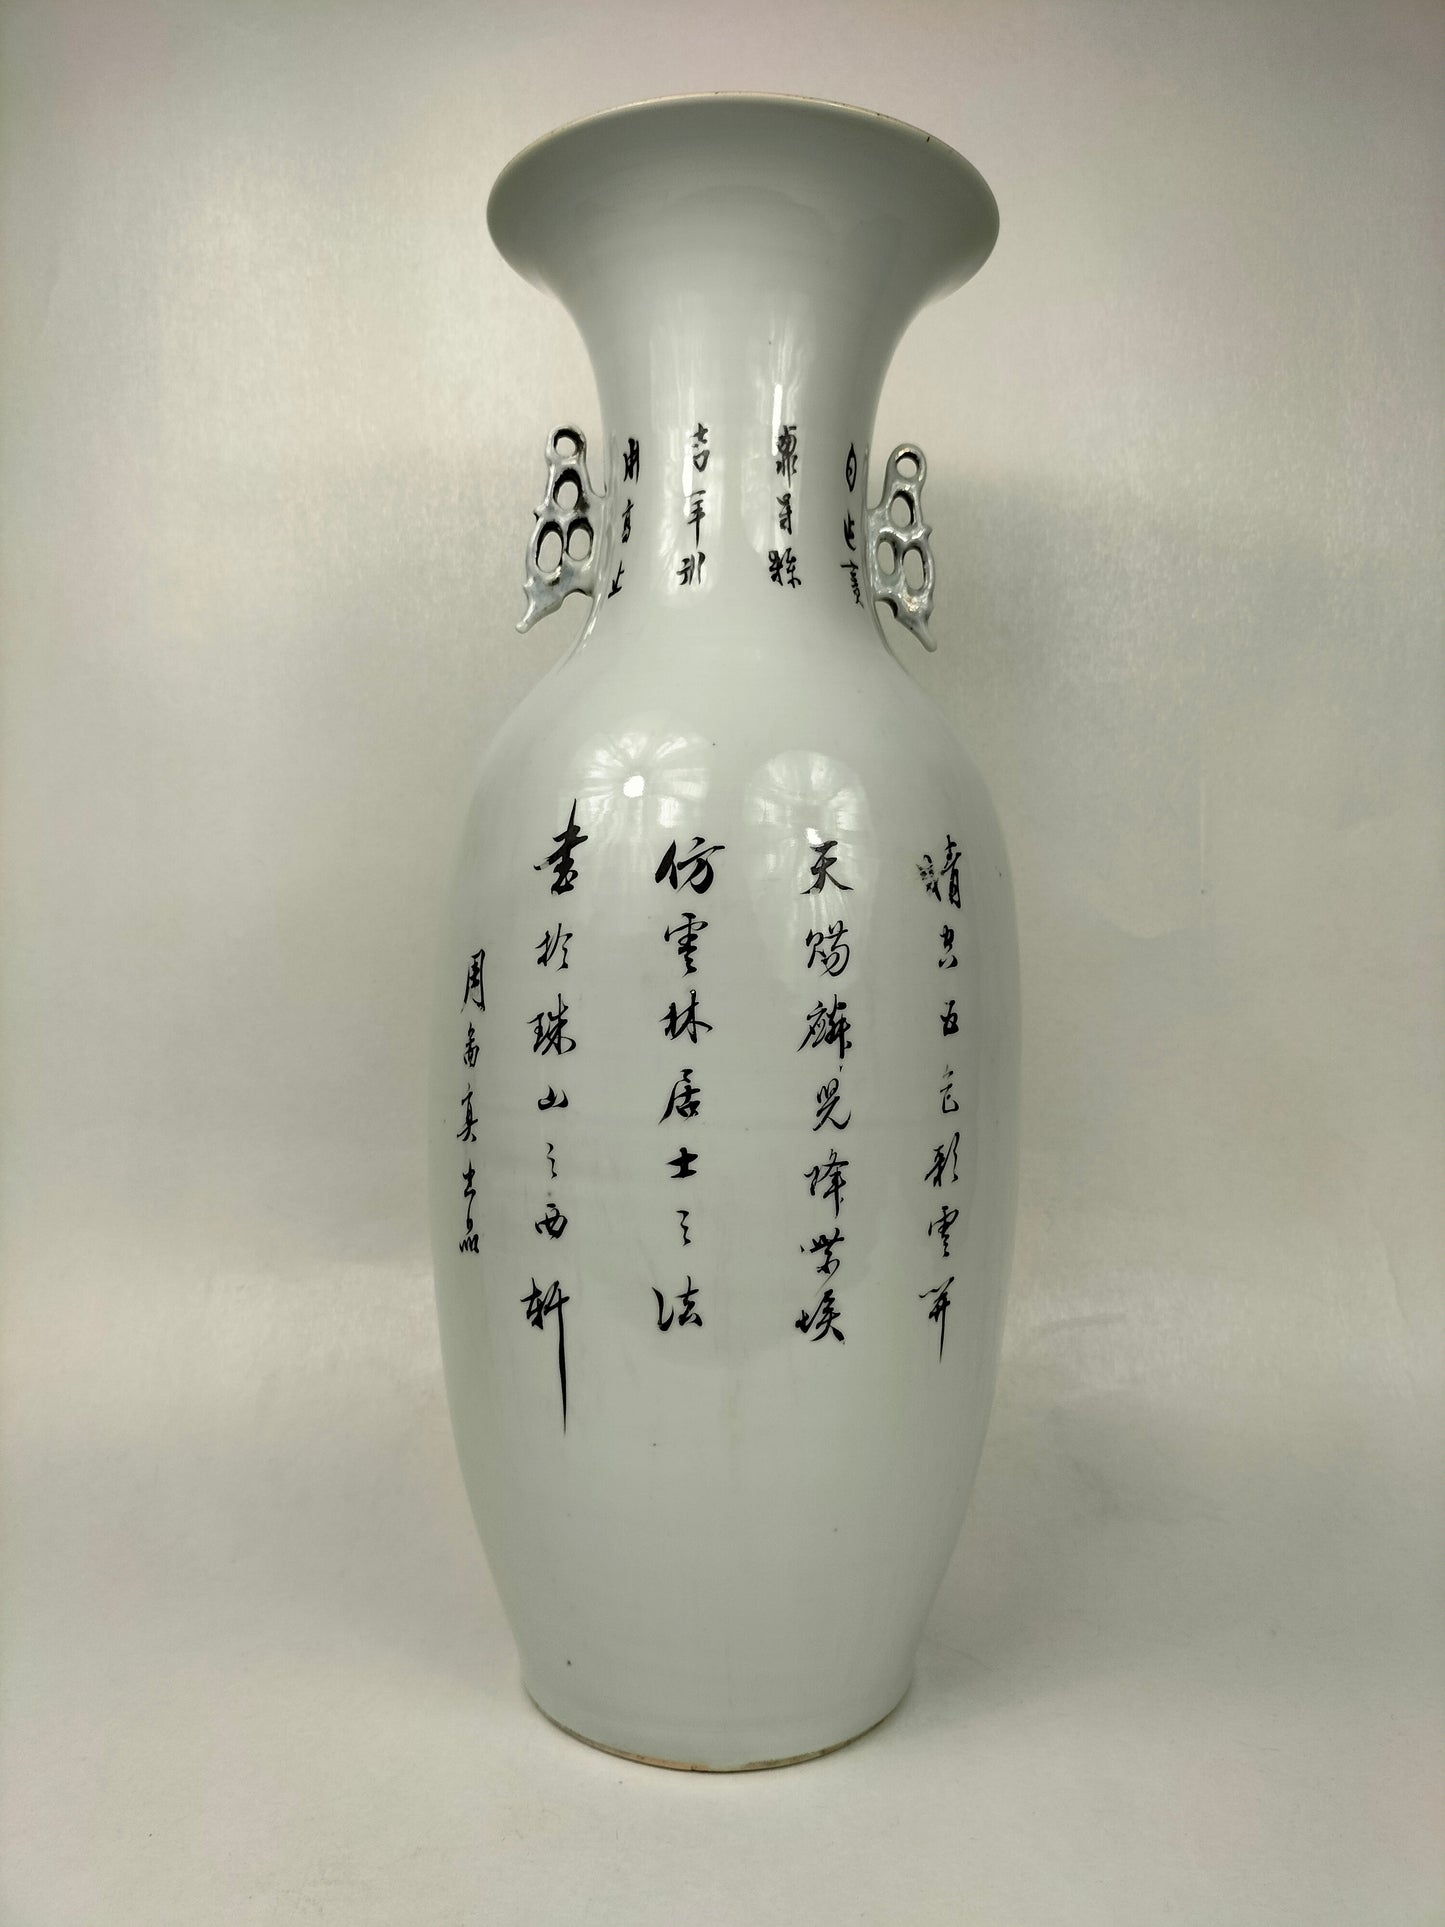 Chiếc bình cổ lớn của Trung Quốc được trang trí bằng các hình và Kylin // Thời kỳ Cộng hòa (1912-1949)